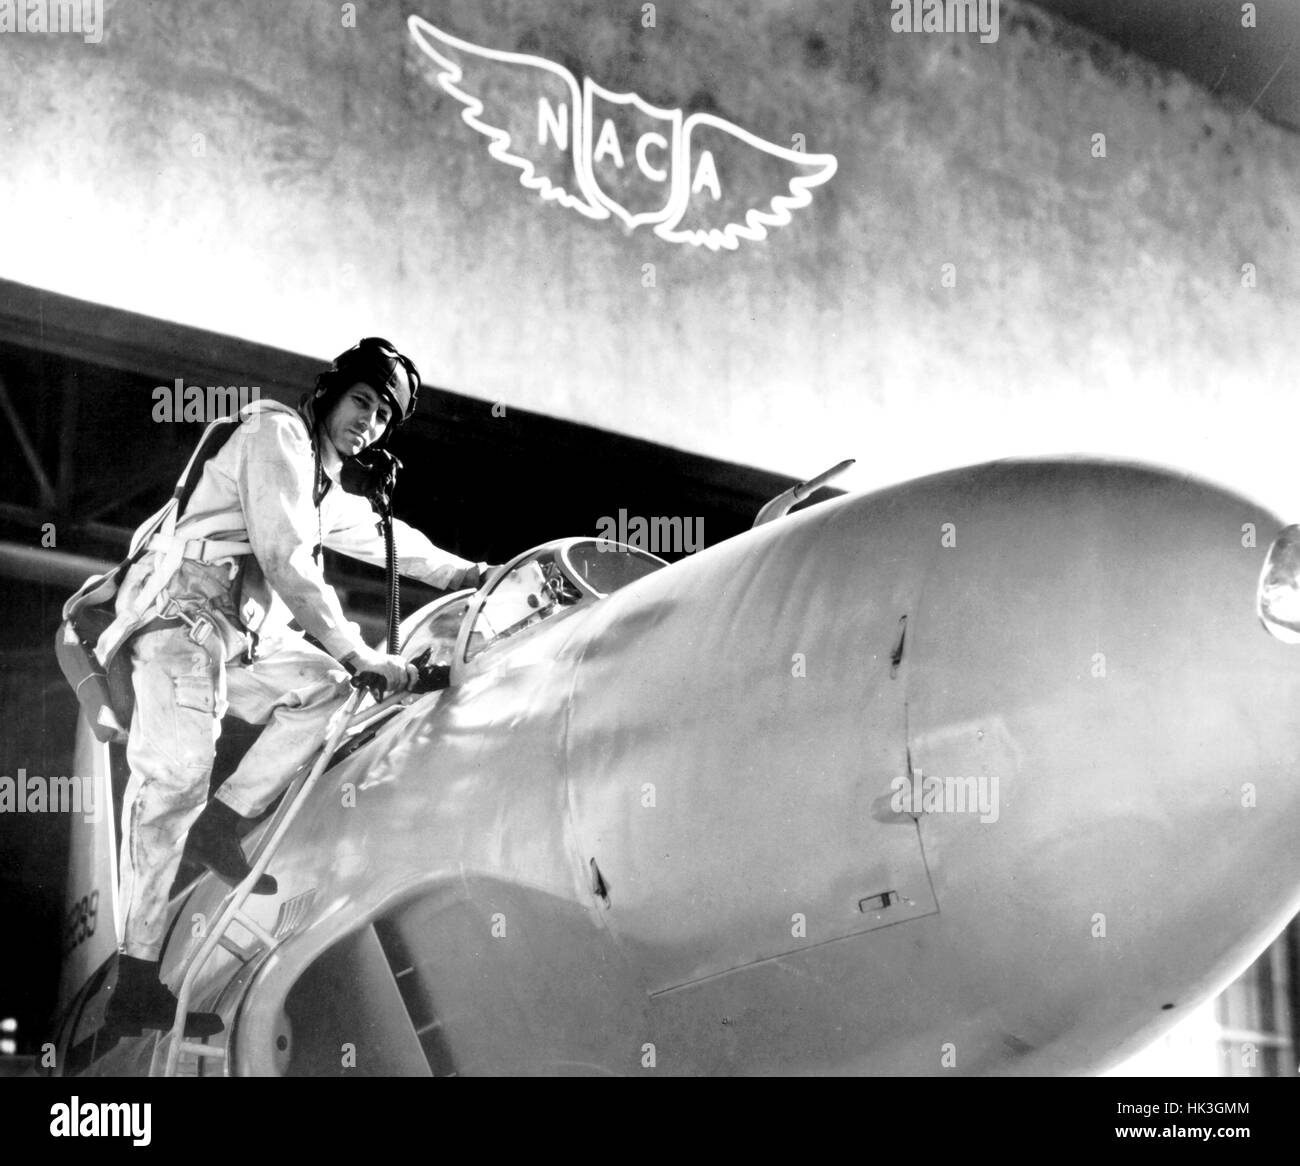 Pilote d'essai Lawrence Clousing Lockheed P-80 à bord d'un aéronef pour un vol d'essai à la NASA Ames Research Center de Mountain View, Californie, avec un logo de la NACA visible à l'arrière-plan, 1960. Image courtoisie de la NASA. Banque D'Images